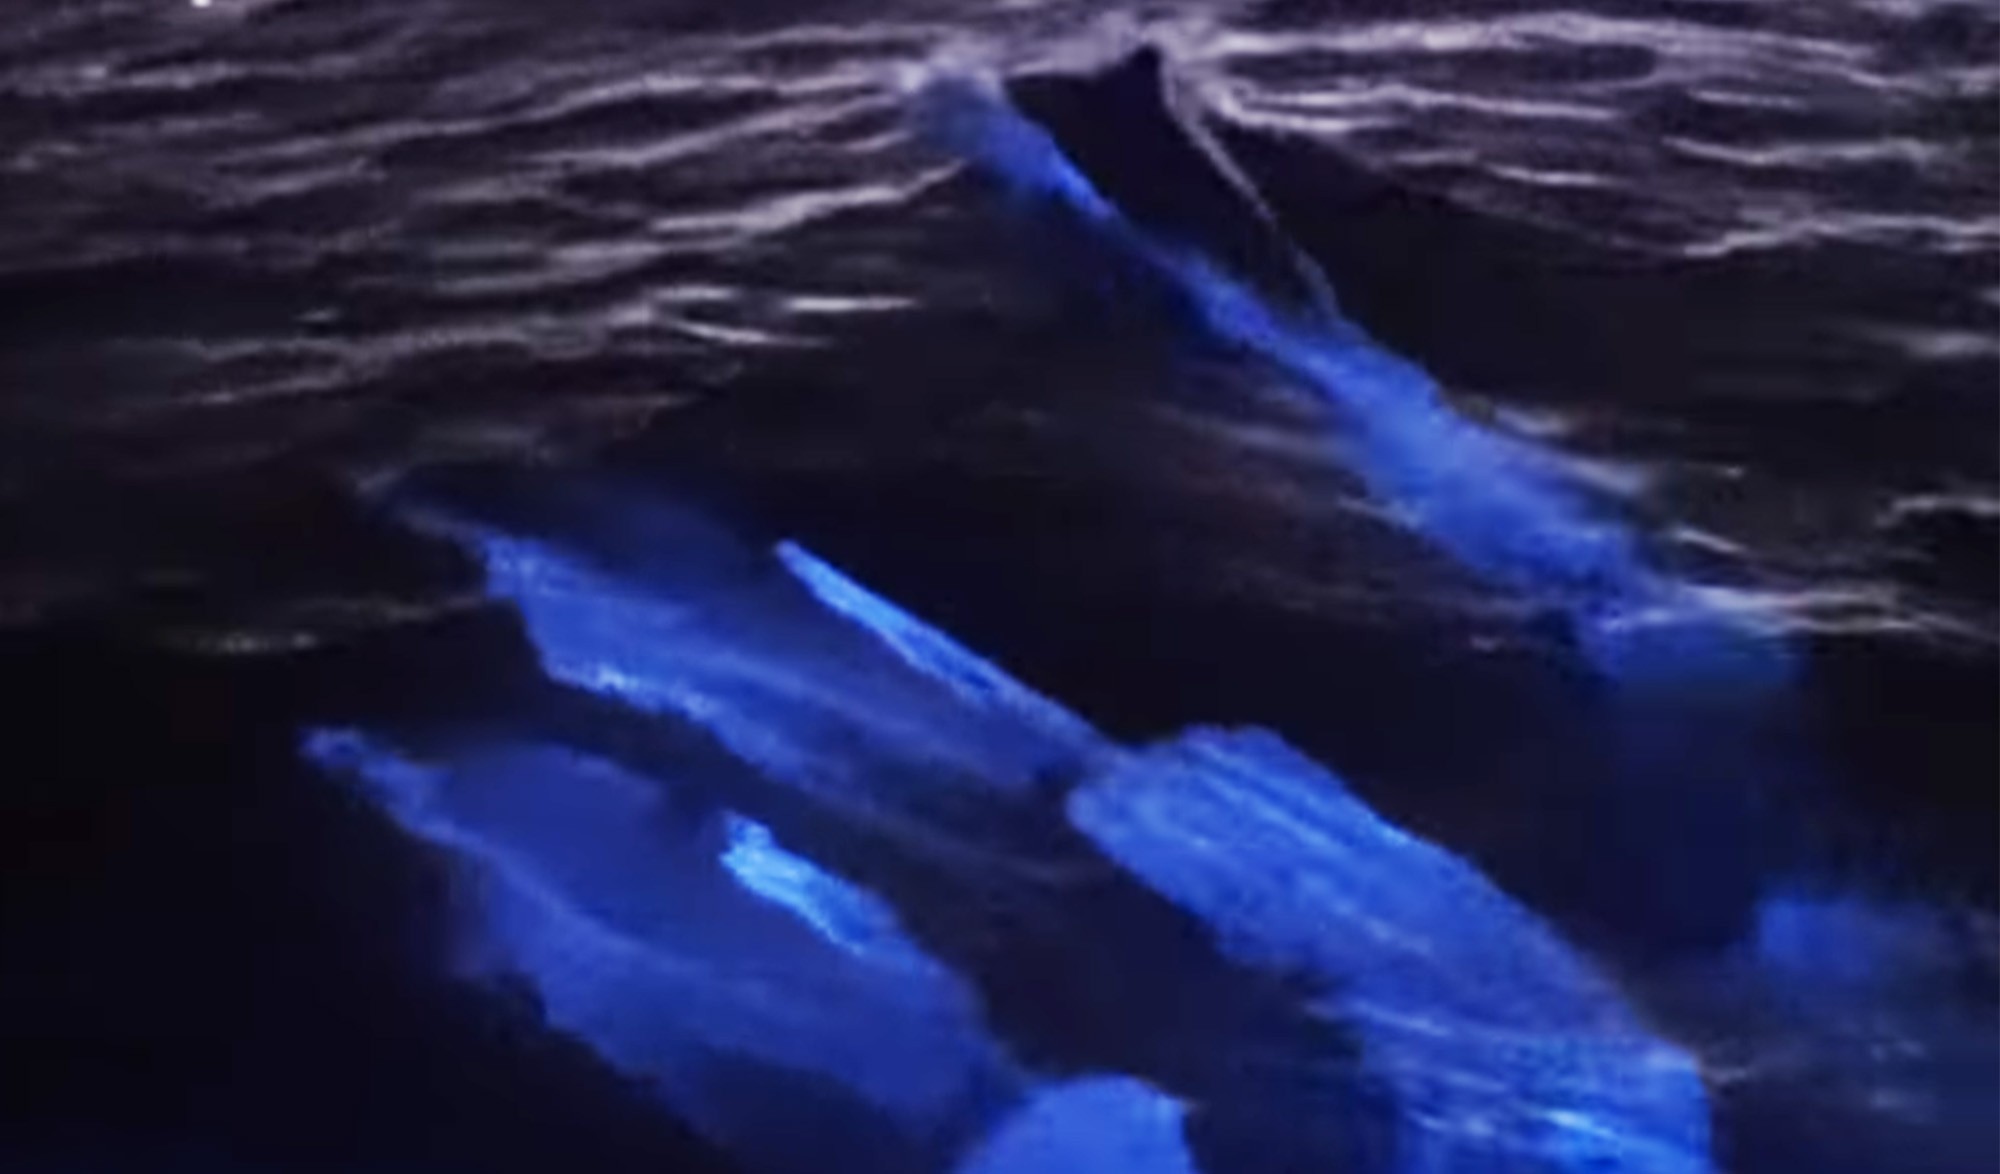 Nado brilhante de golfinhos cria espetáculo durante fenômeno marinho thumbnail